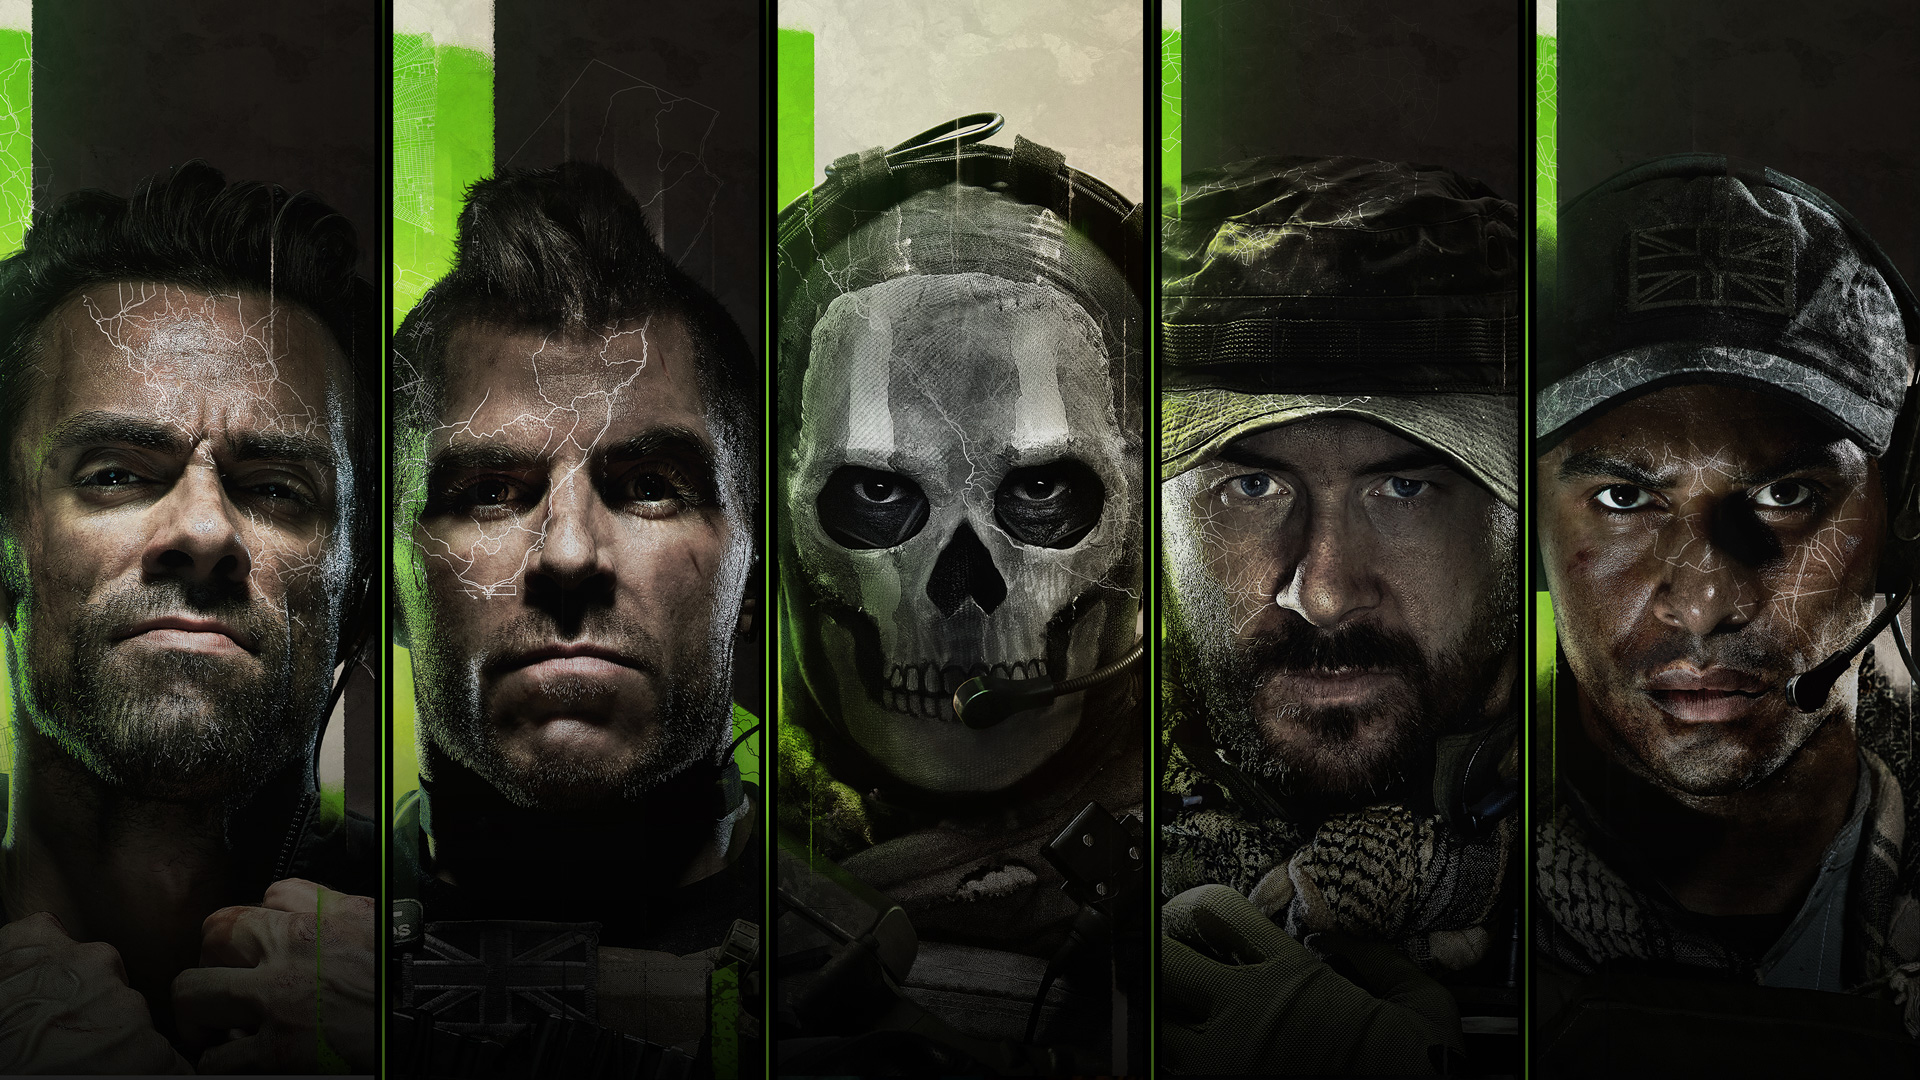 Review: Modern Warfare 2 é o típico CoD com algumas evoluções